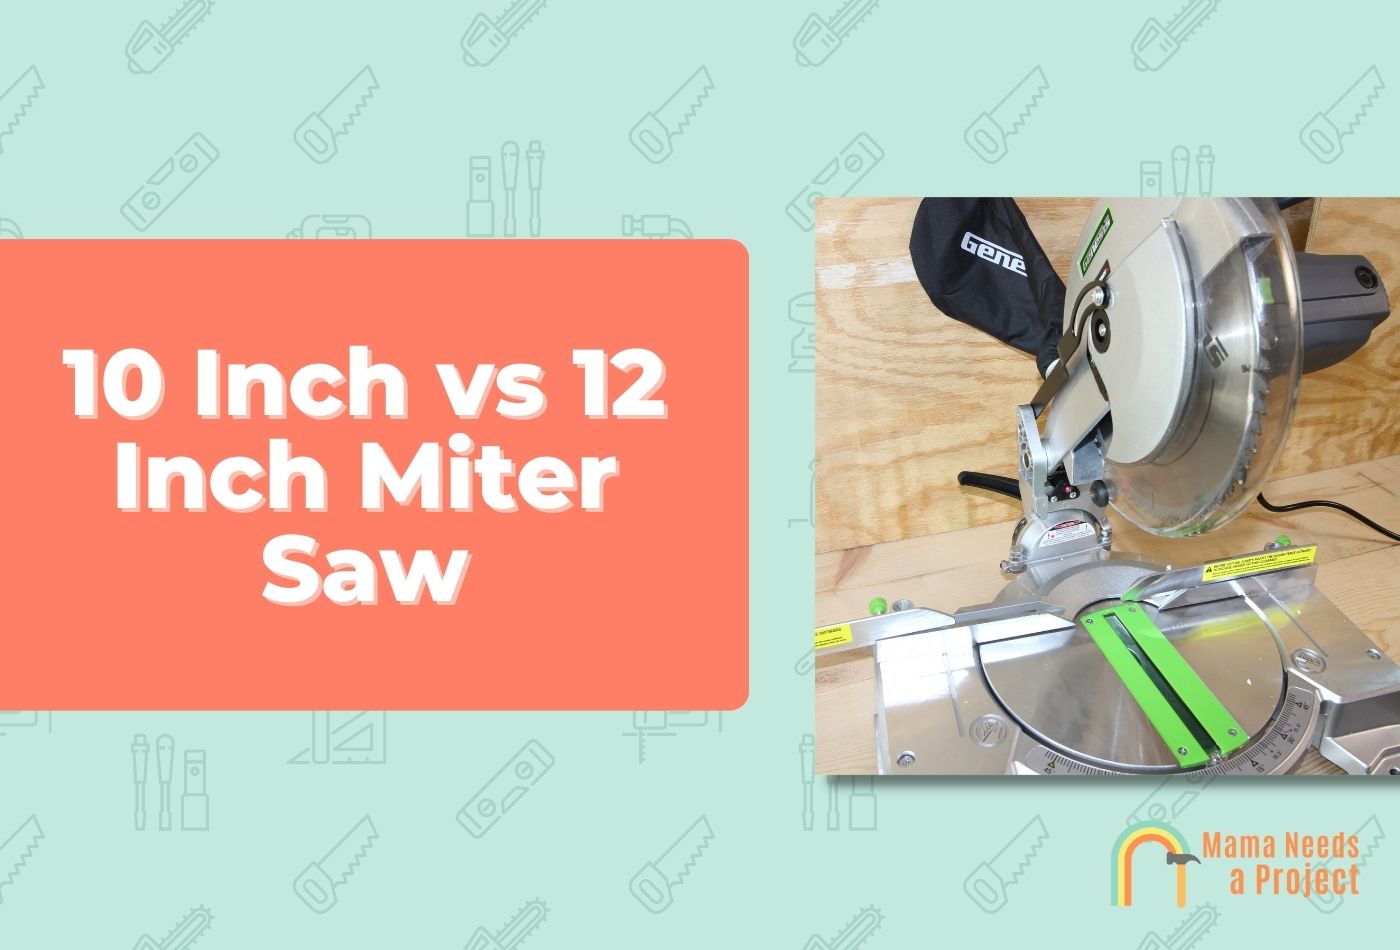 10 Inch vs 12 Inch Miter Saw